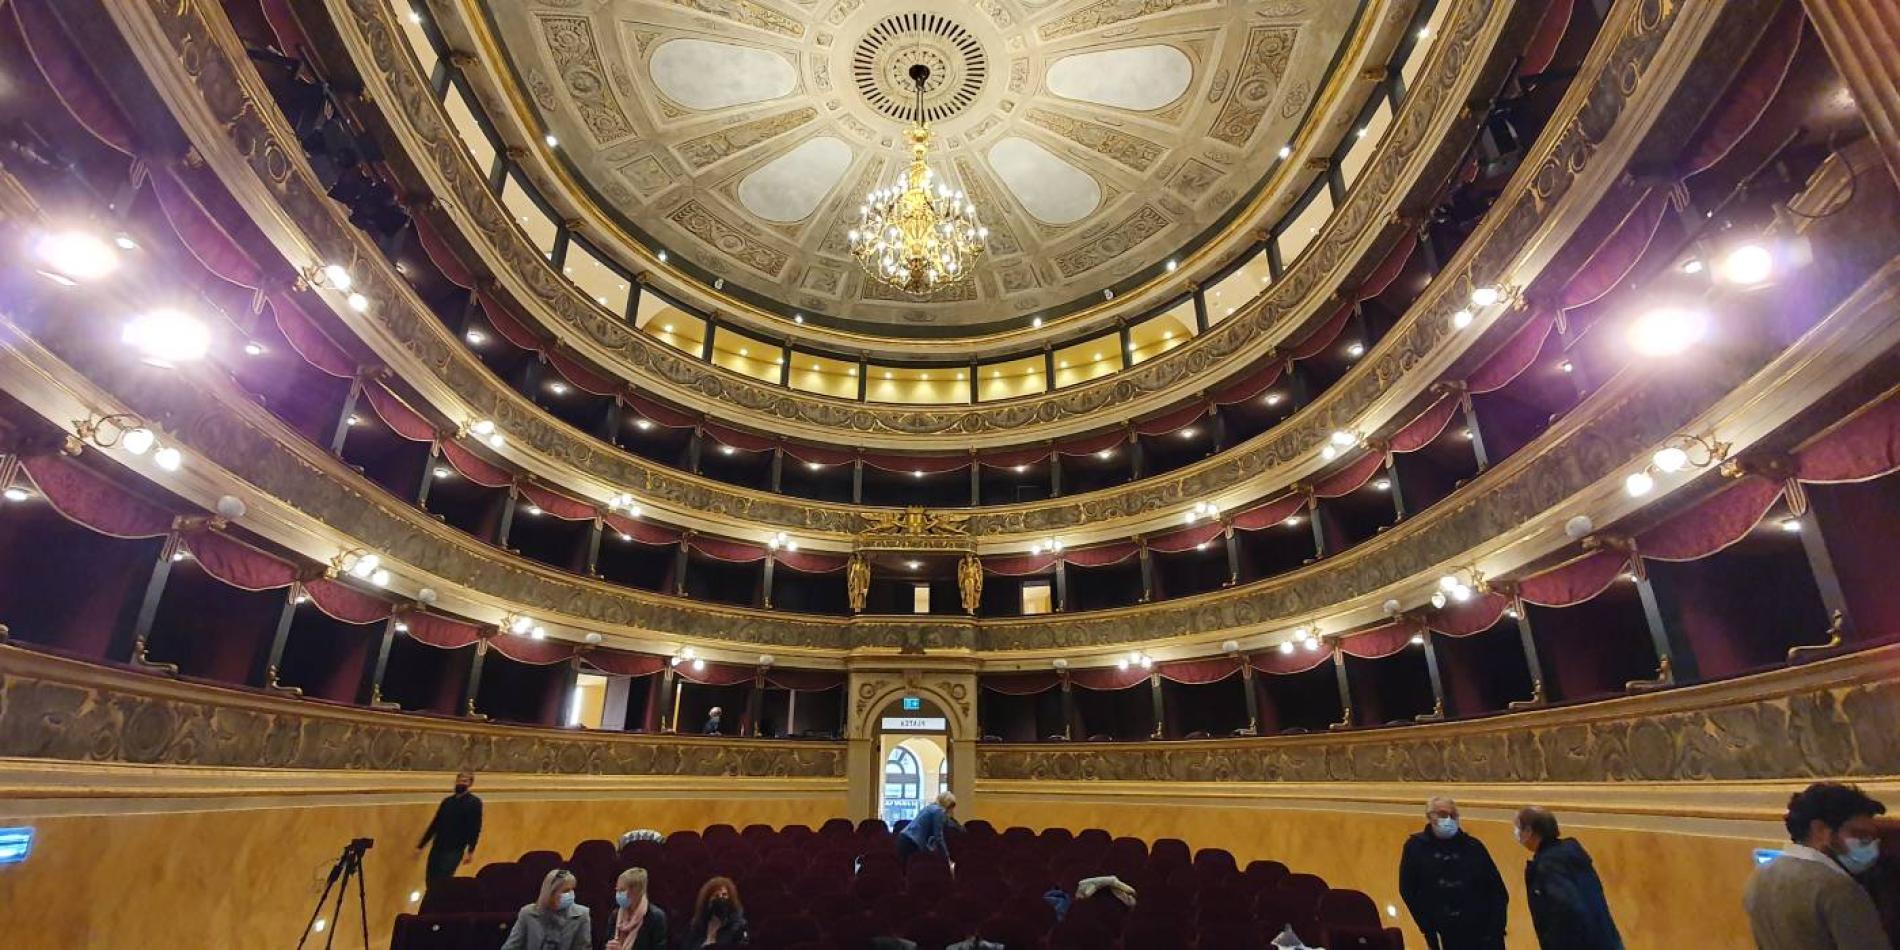 Teatro Marenco, per l’inaugurazione un melting pot di tutte le arti